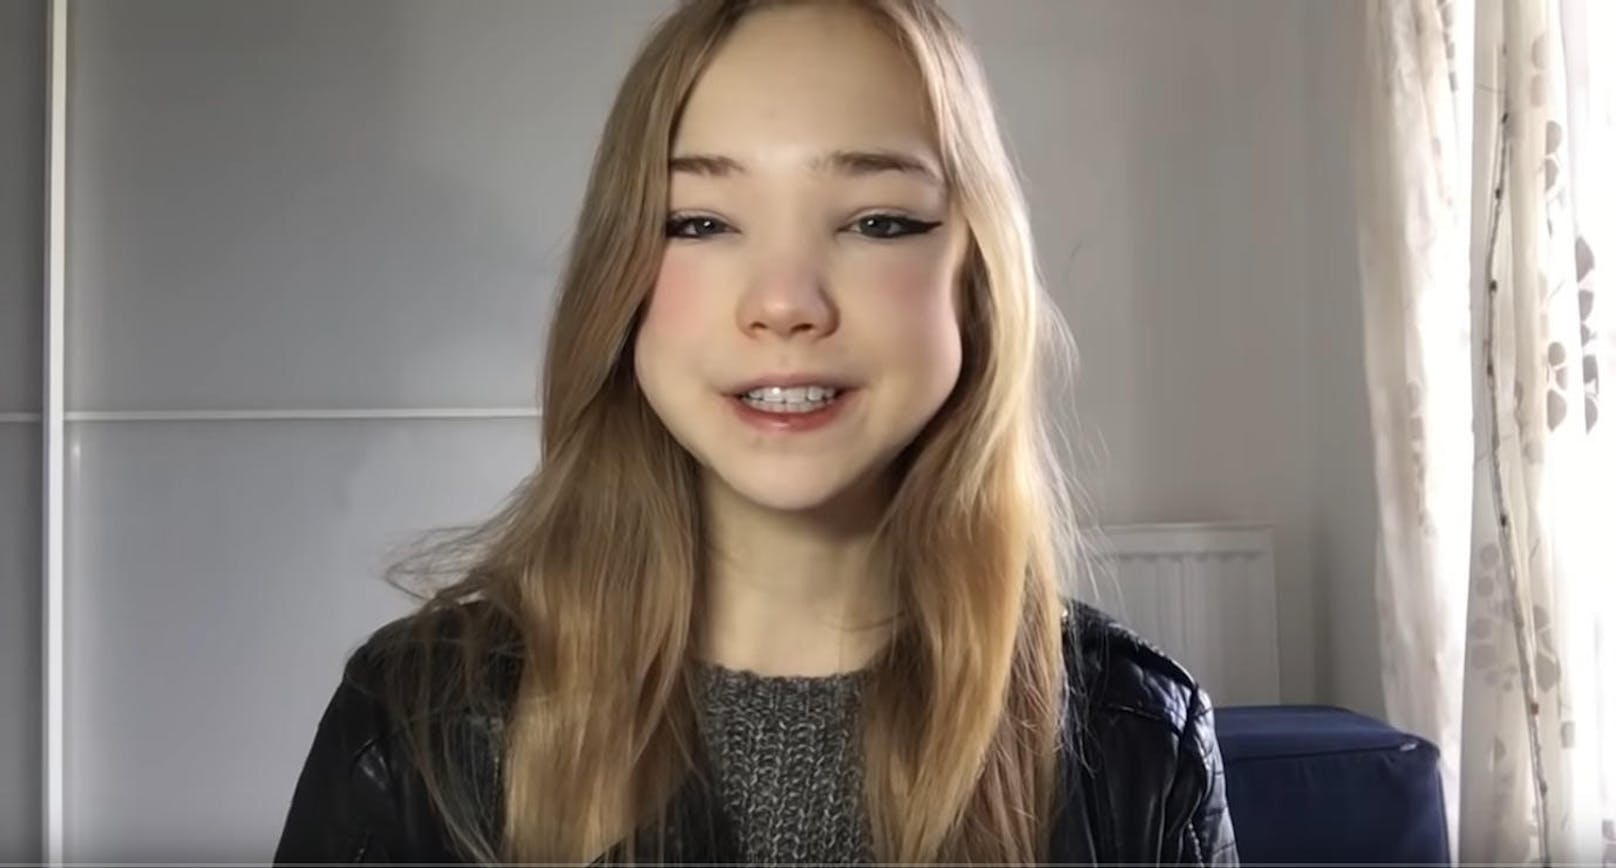 Ganz vorne mit dabei ist Naomi Seibt. Die 19-jährige Deutsche aus Münster ist AfD-Fan und verbreitet auf YouTube unter anderem rechtskonservative Ansichten. Sie soll vom US-Thinktank Heartland Institute als Influencerin gegen das Weltklimaabkommen aufgebaut werden.